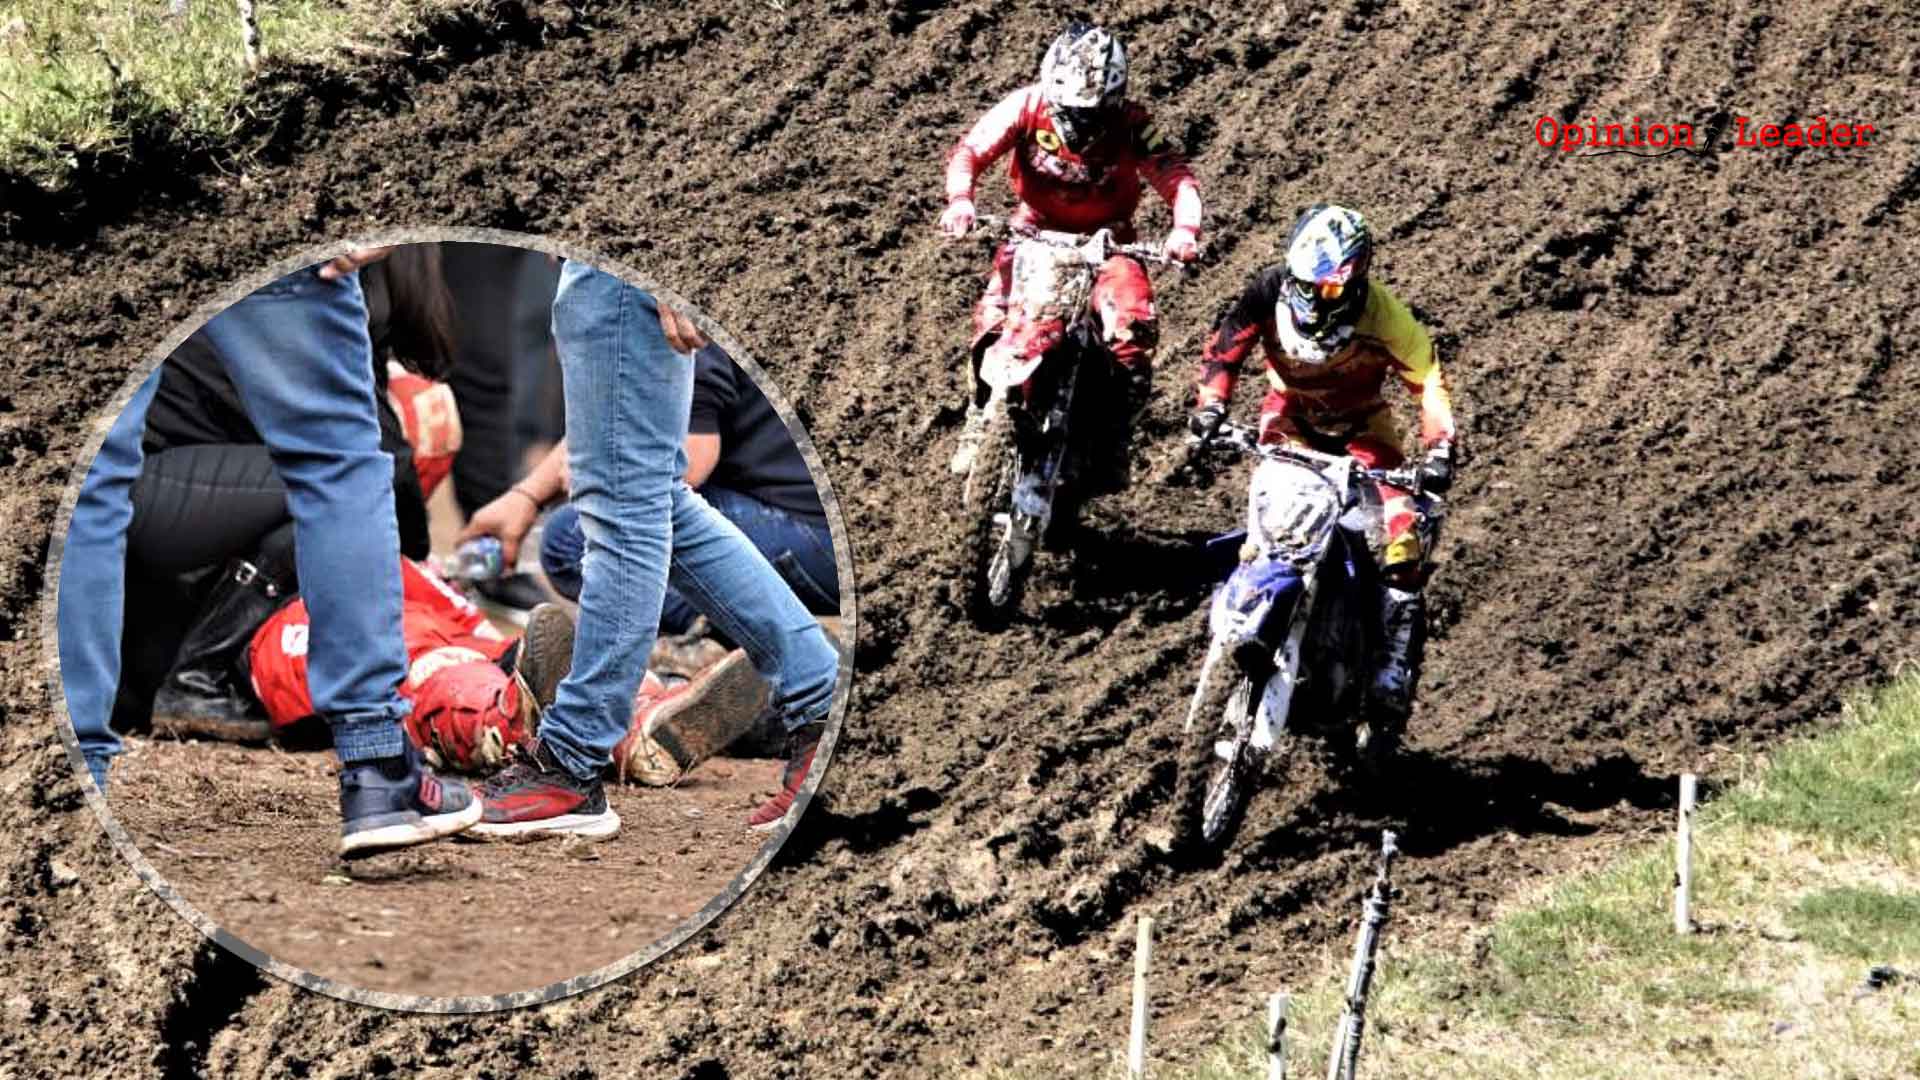 Γιαννιτσά - Ατύχημα αγώνα Motocross - τραυματίες